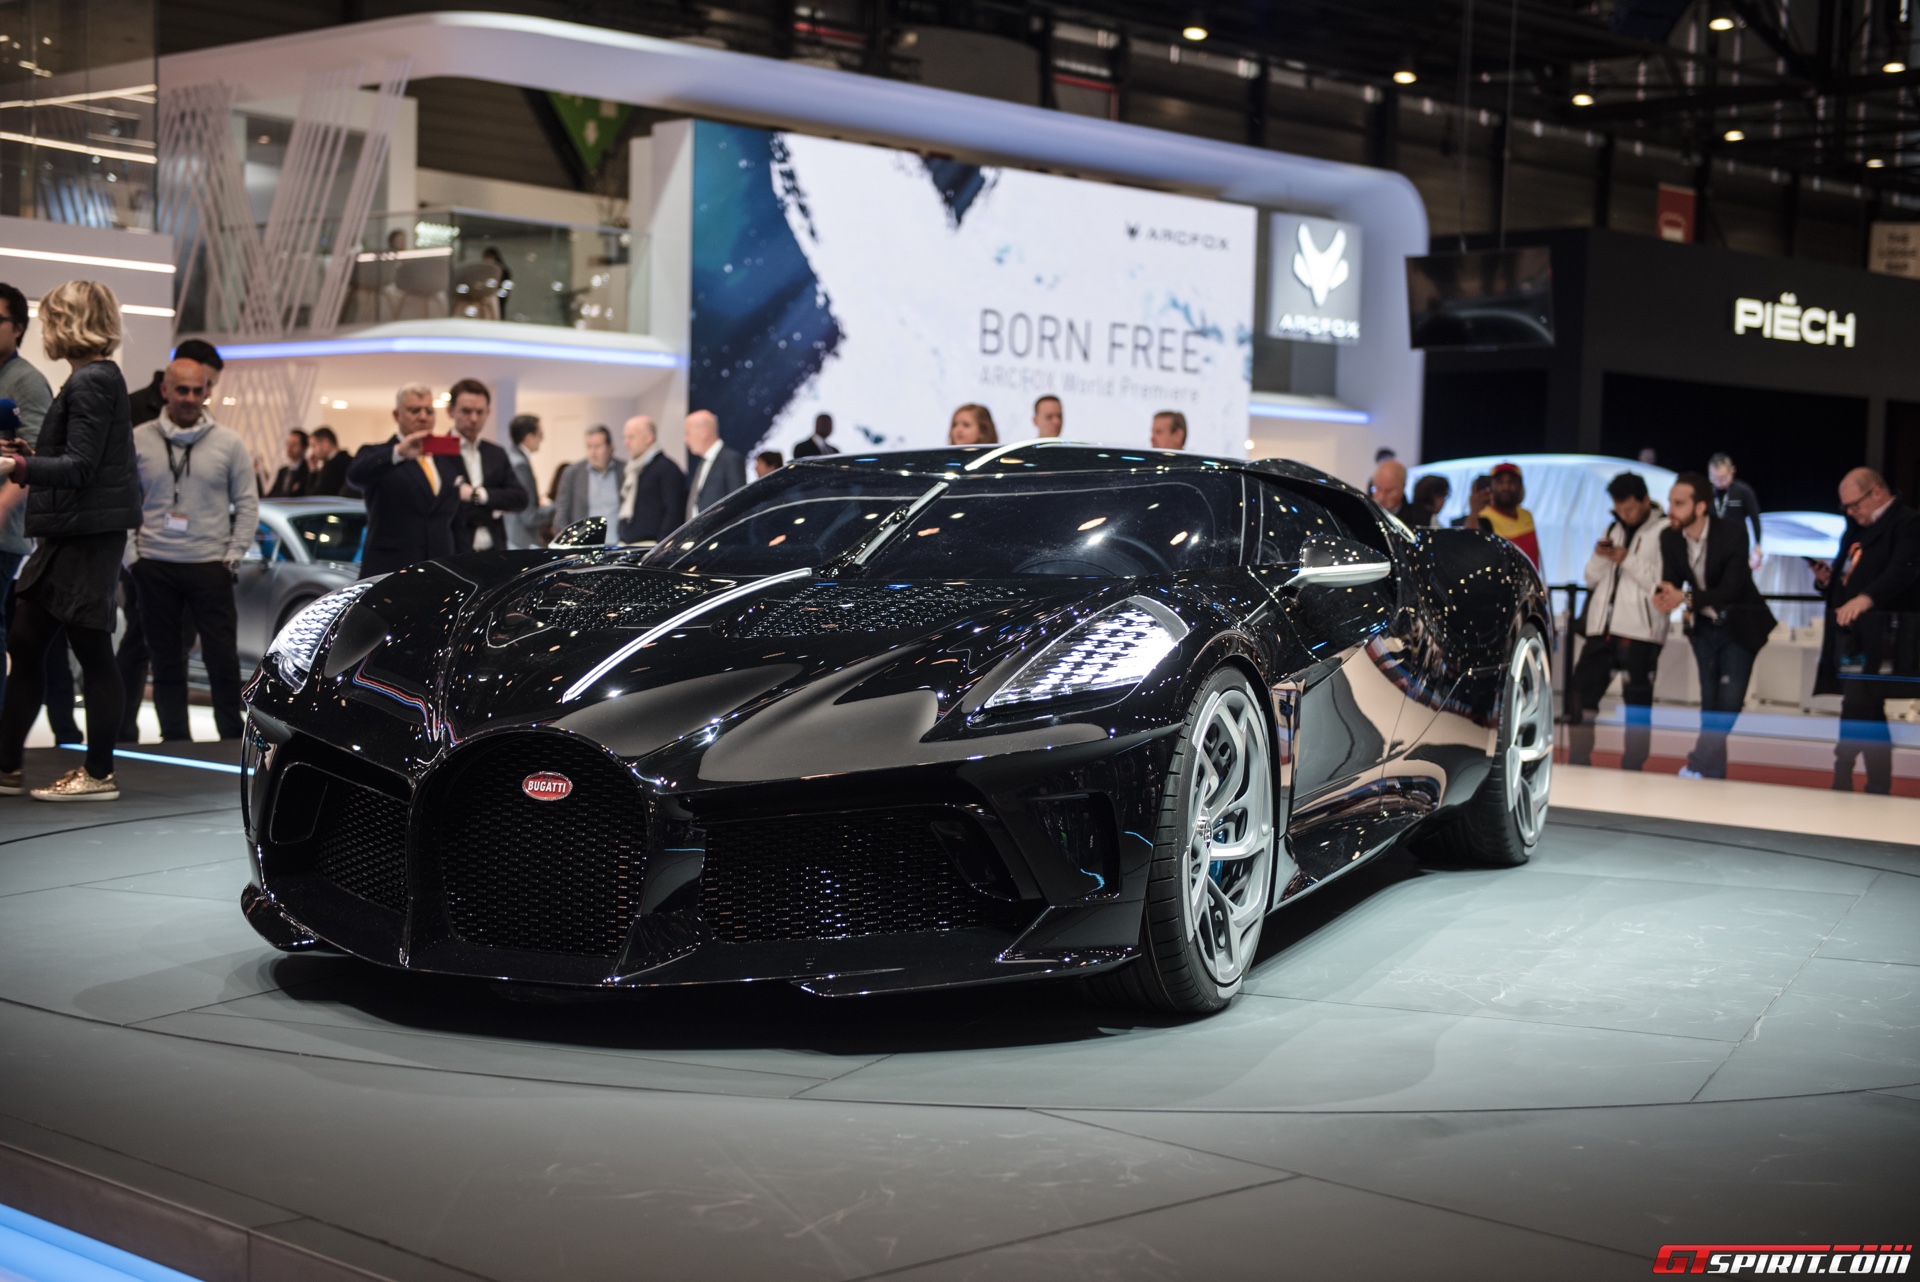 Bugattis La Voiture Noire is the worlds most expensive new auto